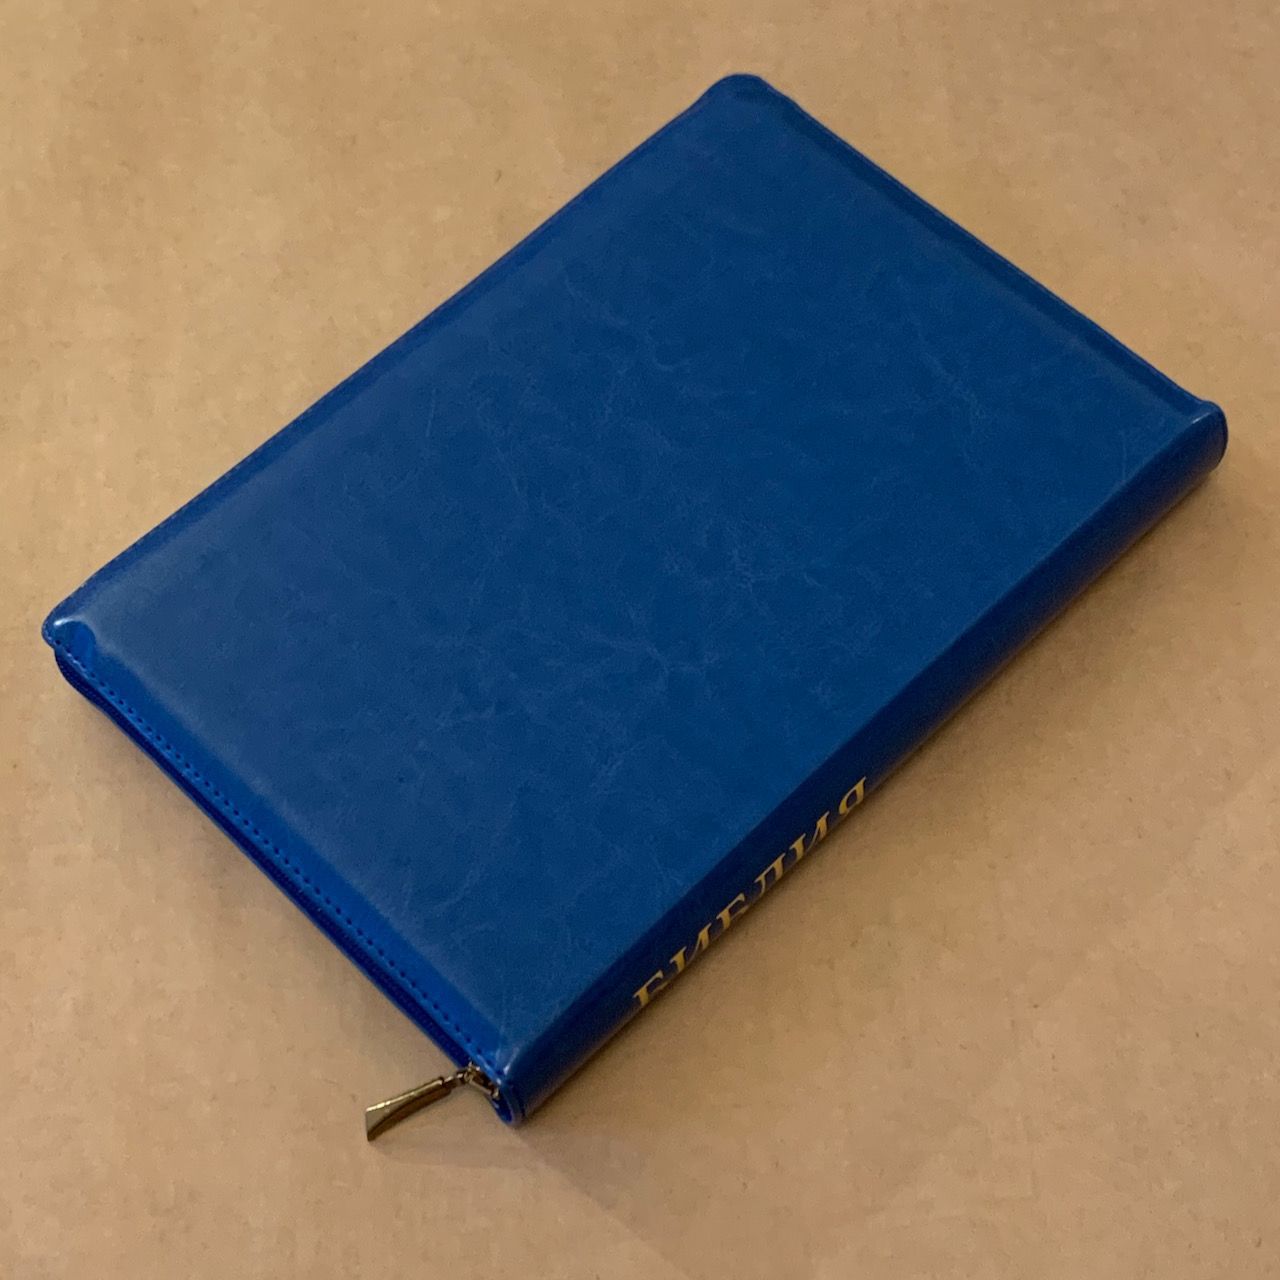 Библия 077zti формат, переплет из искусственной кожи на молнии с индексами, цвет синий светлый, большой формат, 180*260 мм, цветные карты, крупный шрифт